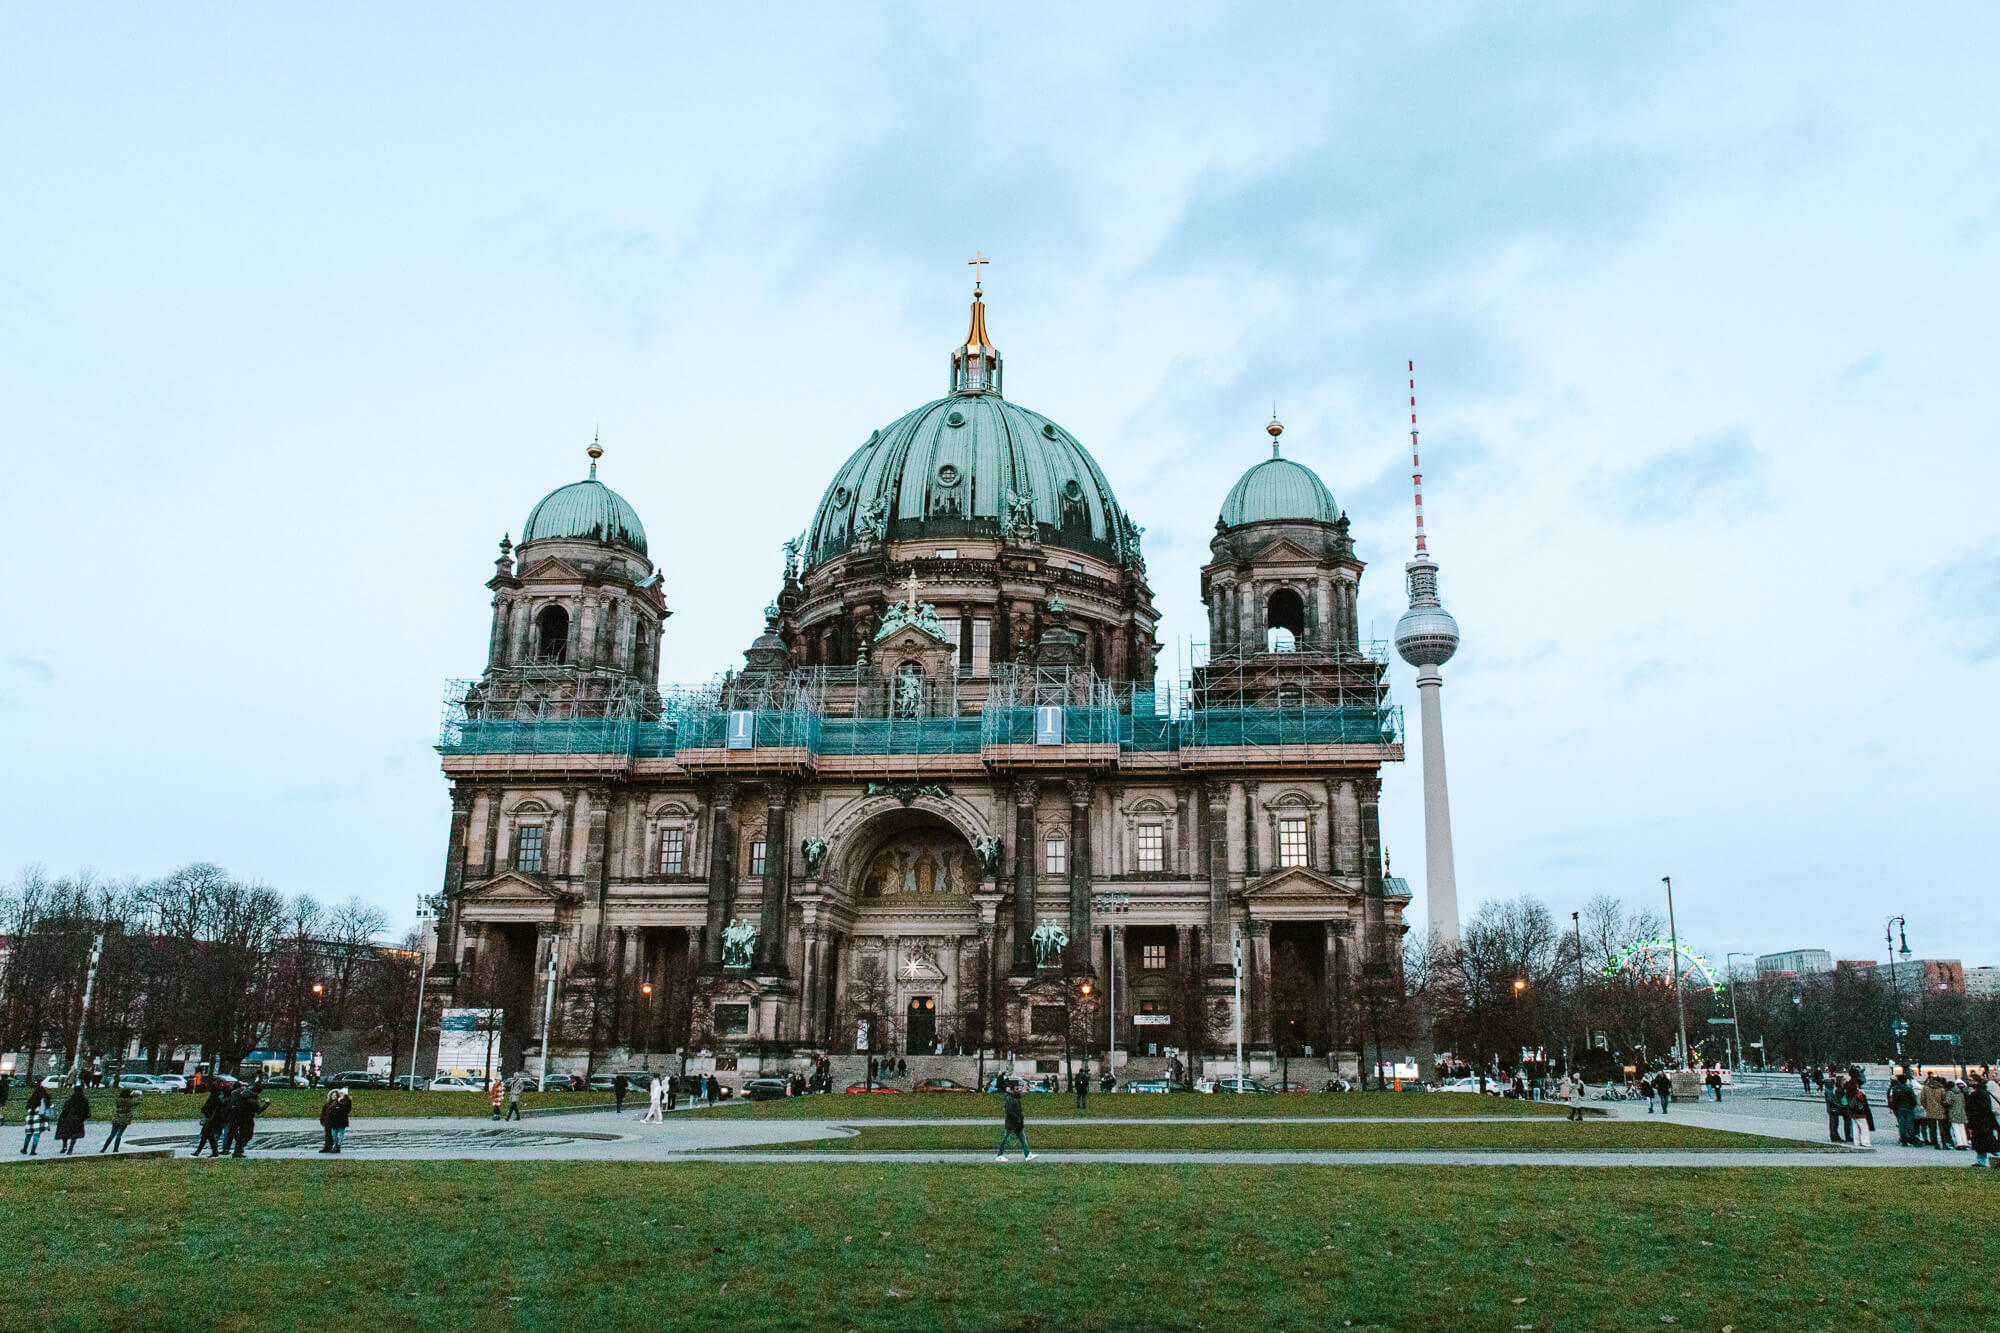 Berlijn City Guide tips - Hotspotjes